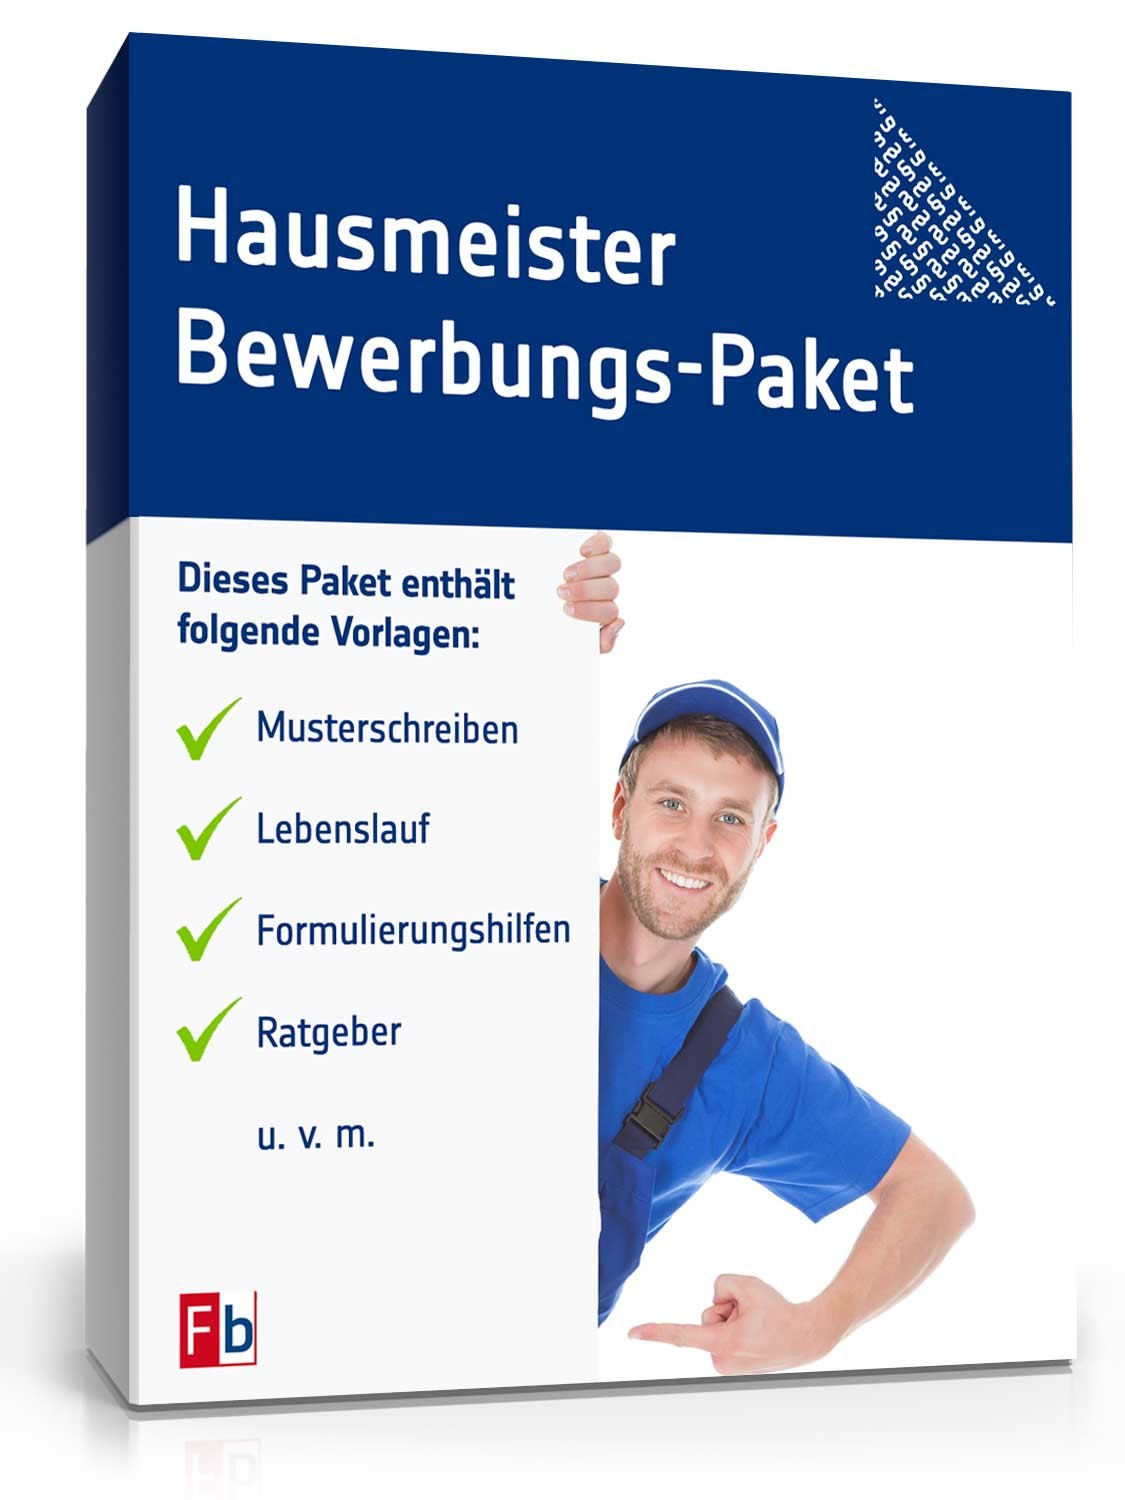 Hauptbild des Produkts: Bewerbungs-Paket Hausmeister